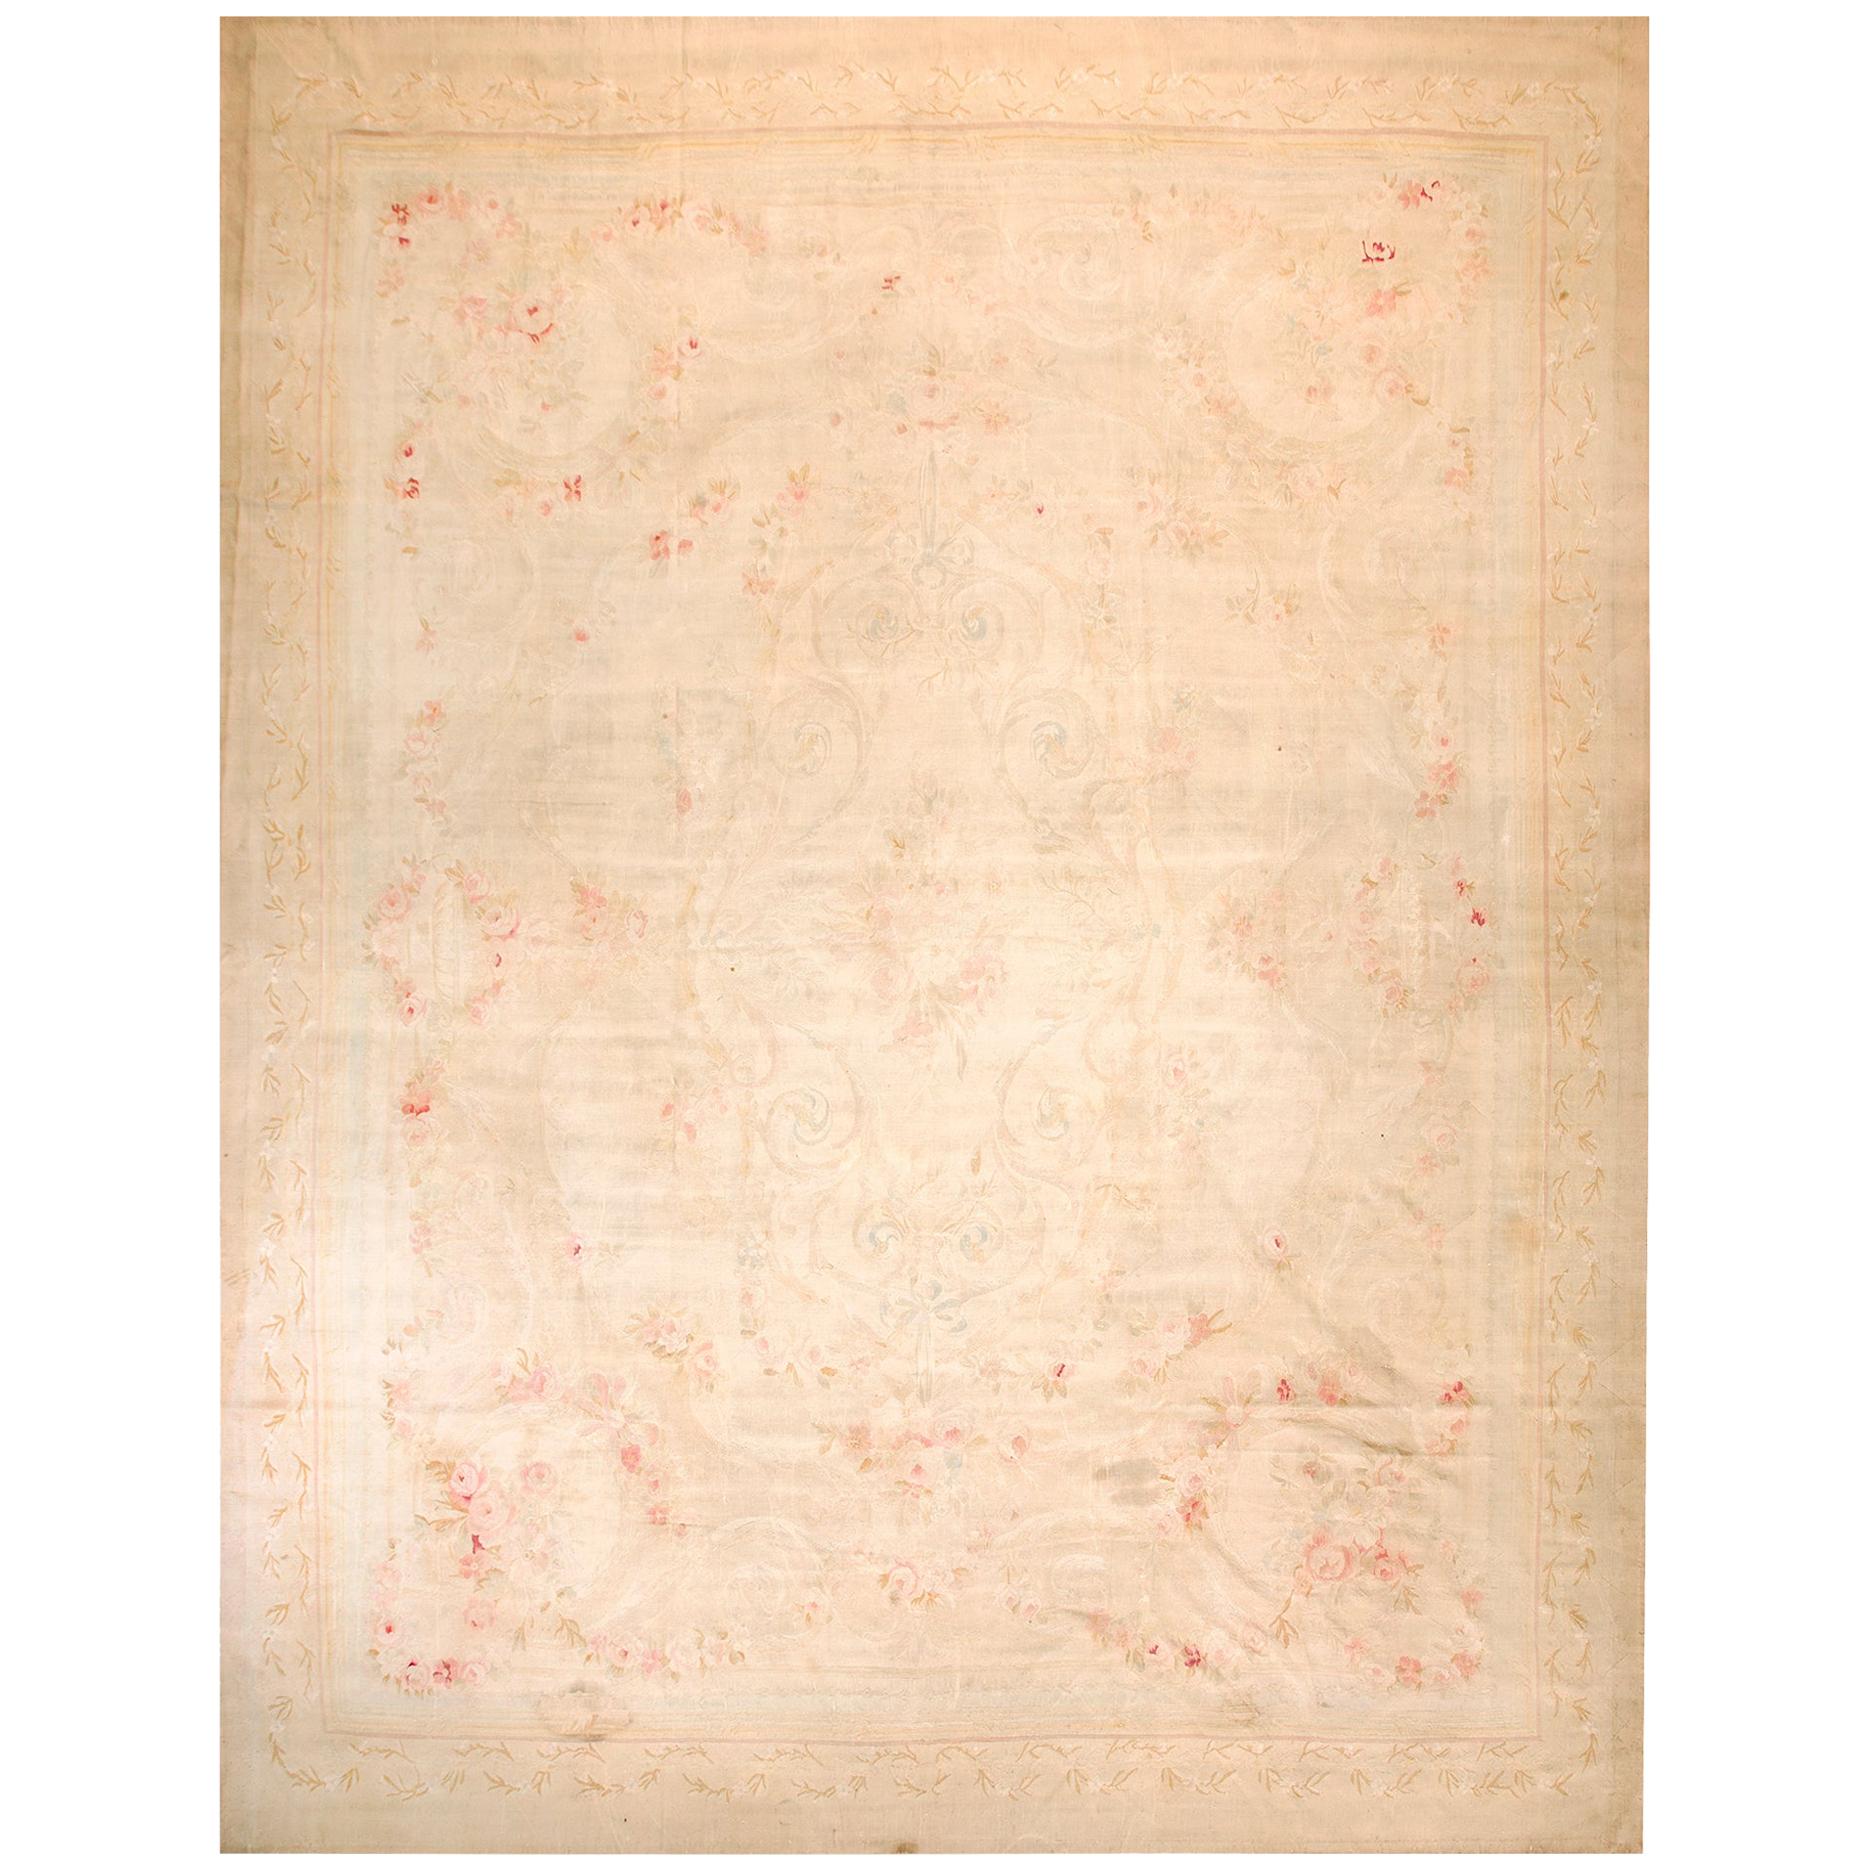 Französischer Aubusson-Teppich des 19. Jahrhunderts ( 12' x 15'6" - 365 x 472)